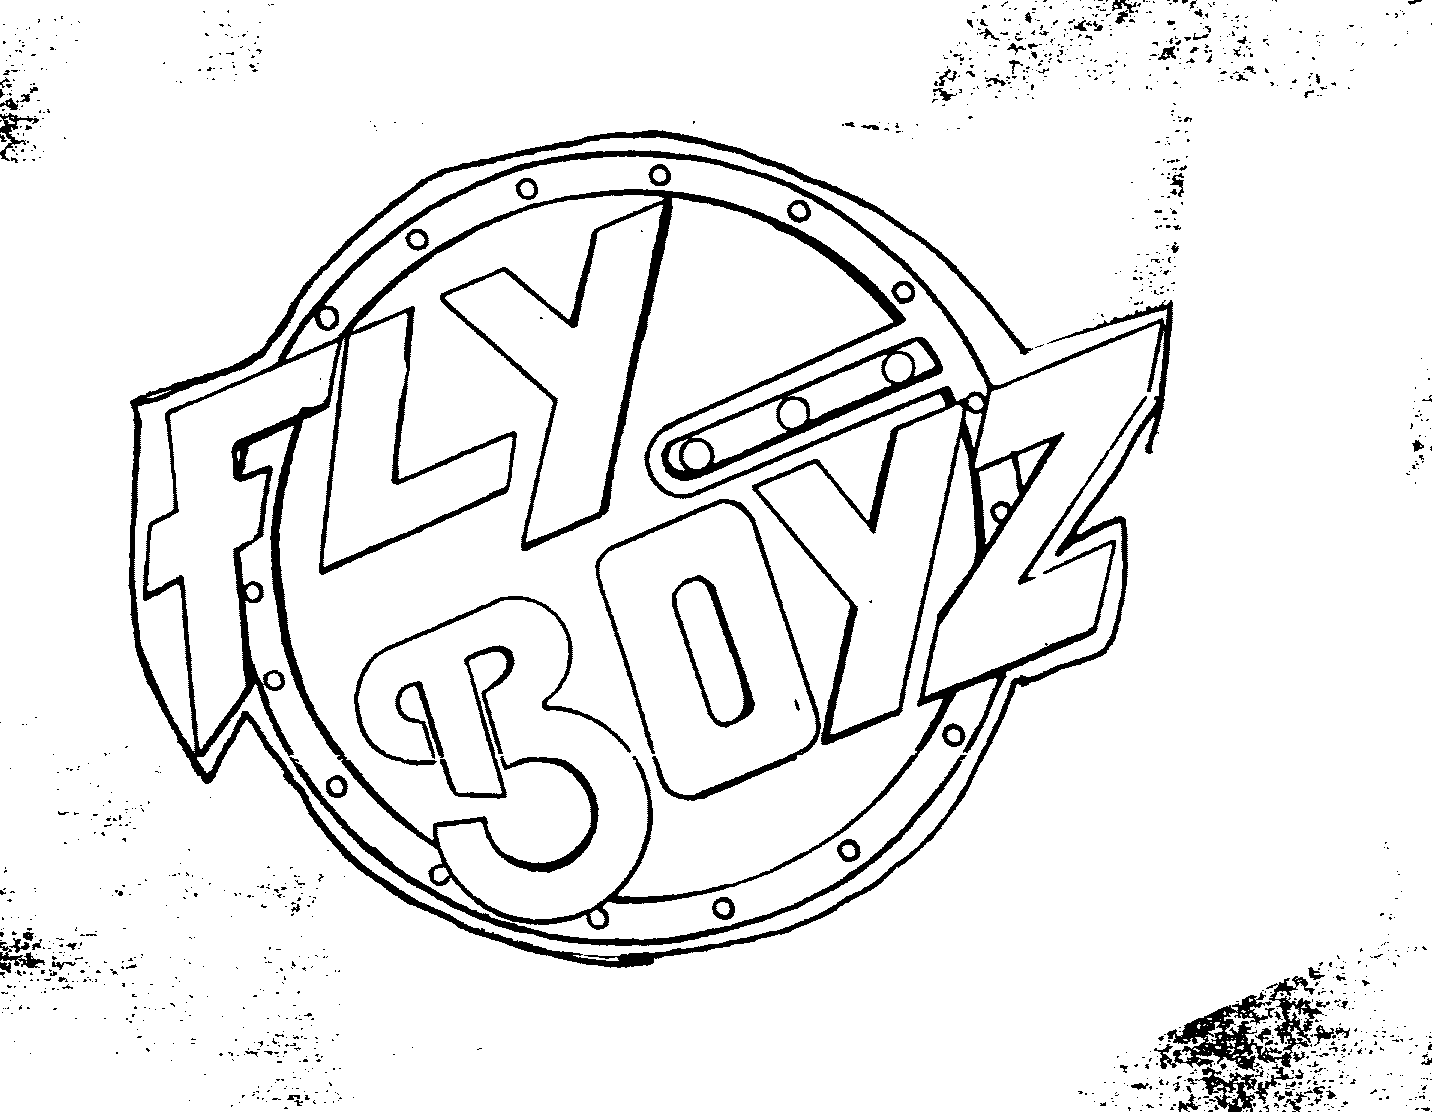  FLY BOYZ